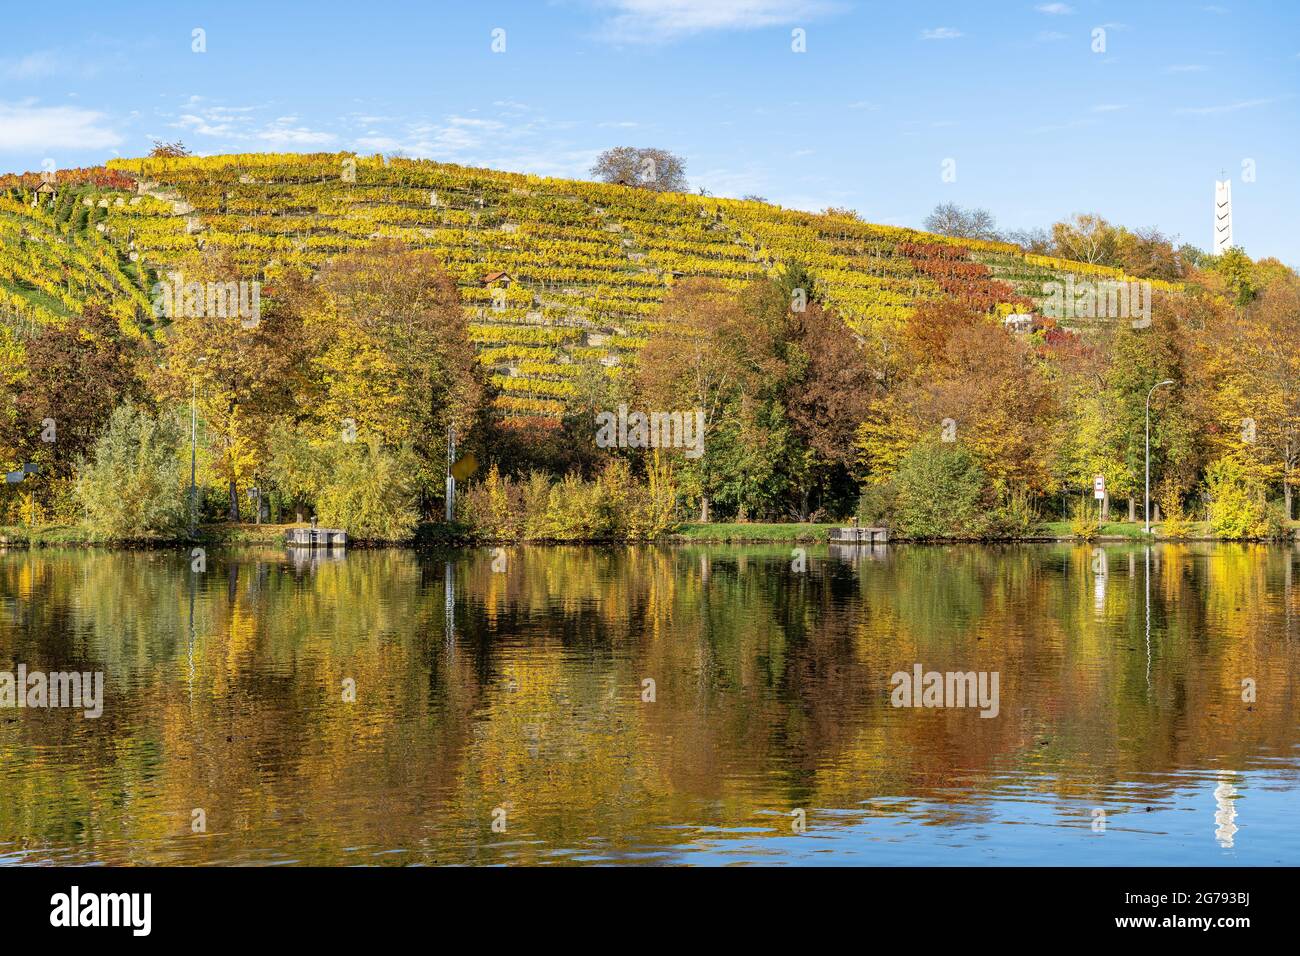 Europa, Deutschland, Baden-Württemberg, Stuttgart, Blick auf die herbstlich gefärbten Weinberge von Cannstatter Zuckerle am Neckar Stockfoto